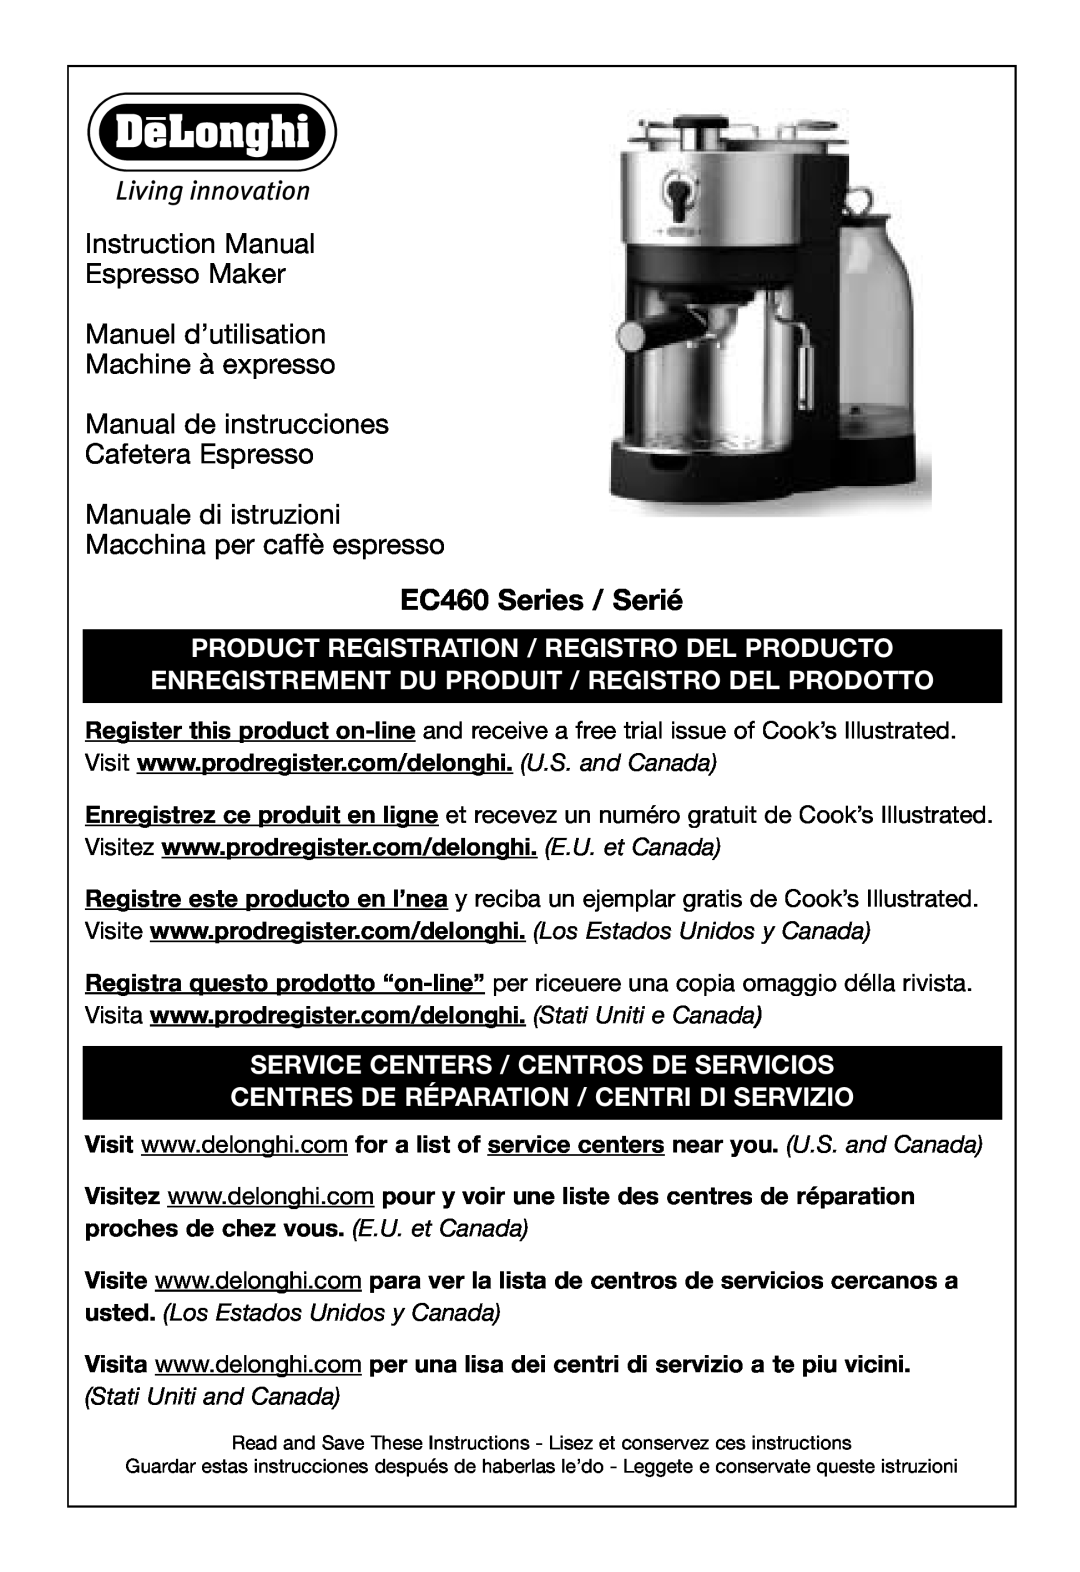 DeLonghi EC460 instruction manual Manuel d’utilisation Machine à expresso, Manual de instrucciones Cafetera Espresso 